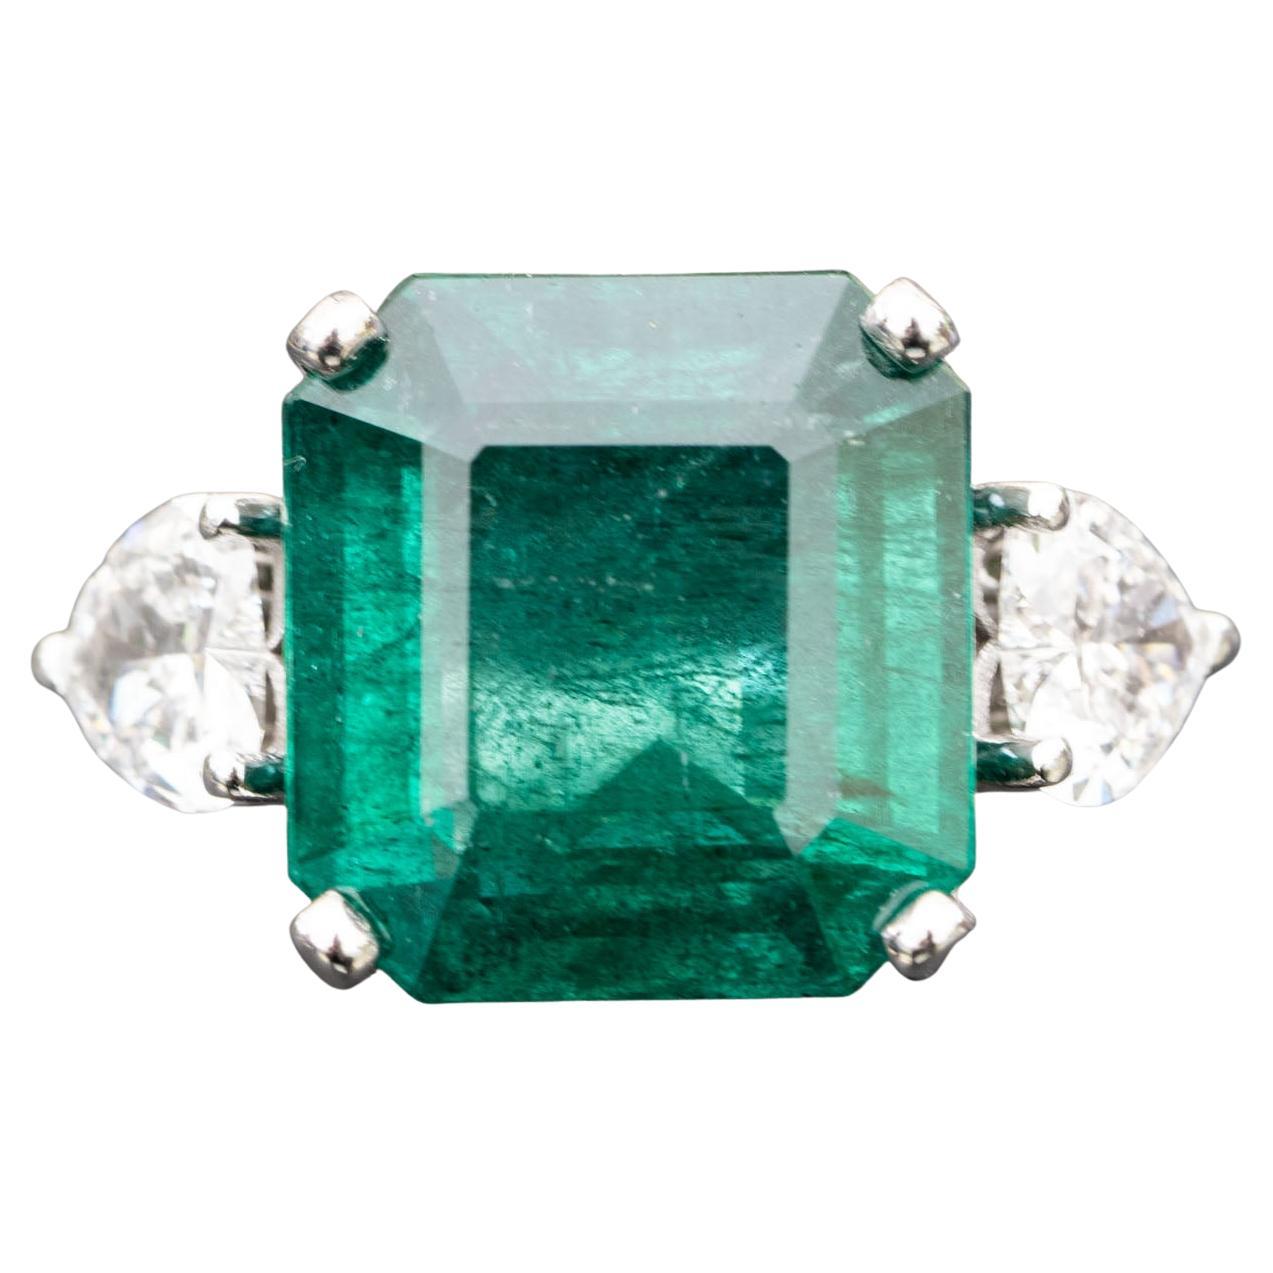 5.10 Carat Natural Emerald Engagement Ring, 0.65 Carat Natural Diamonds